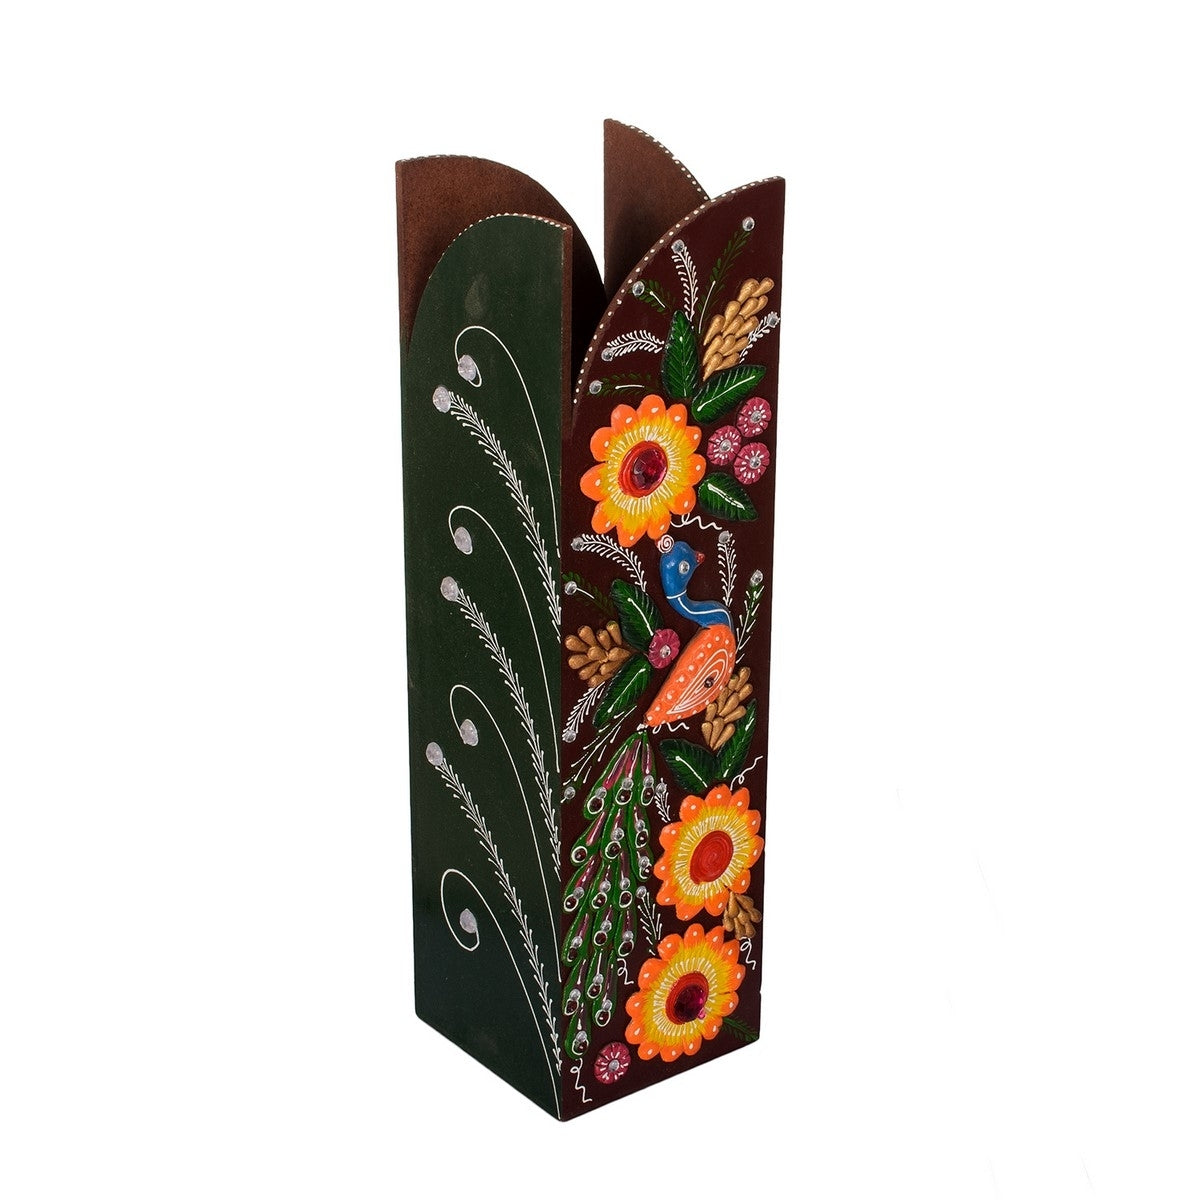 Splendid Papier-Mache Wooden Floral Vase 1